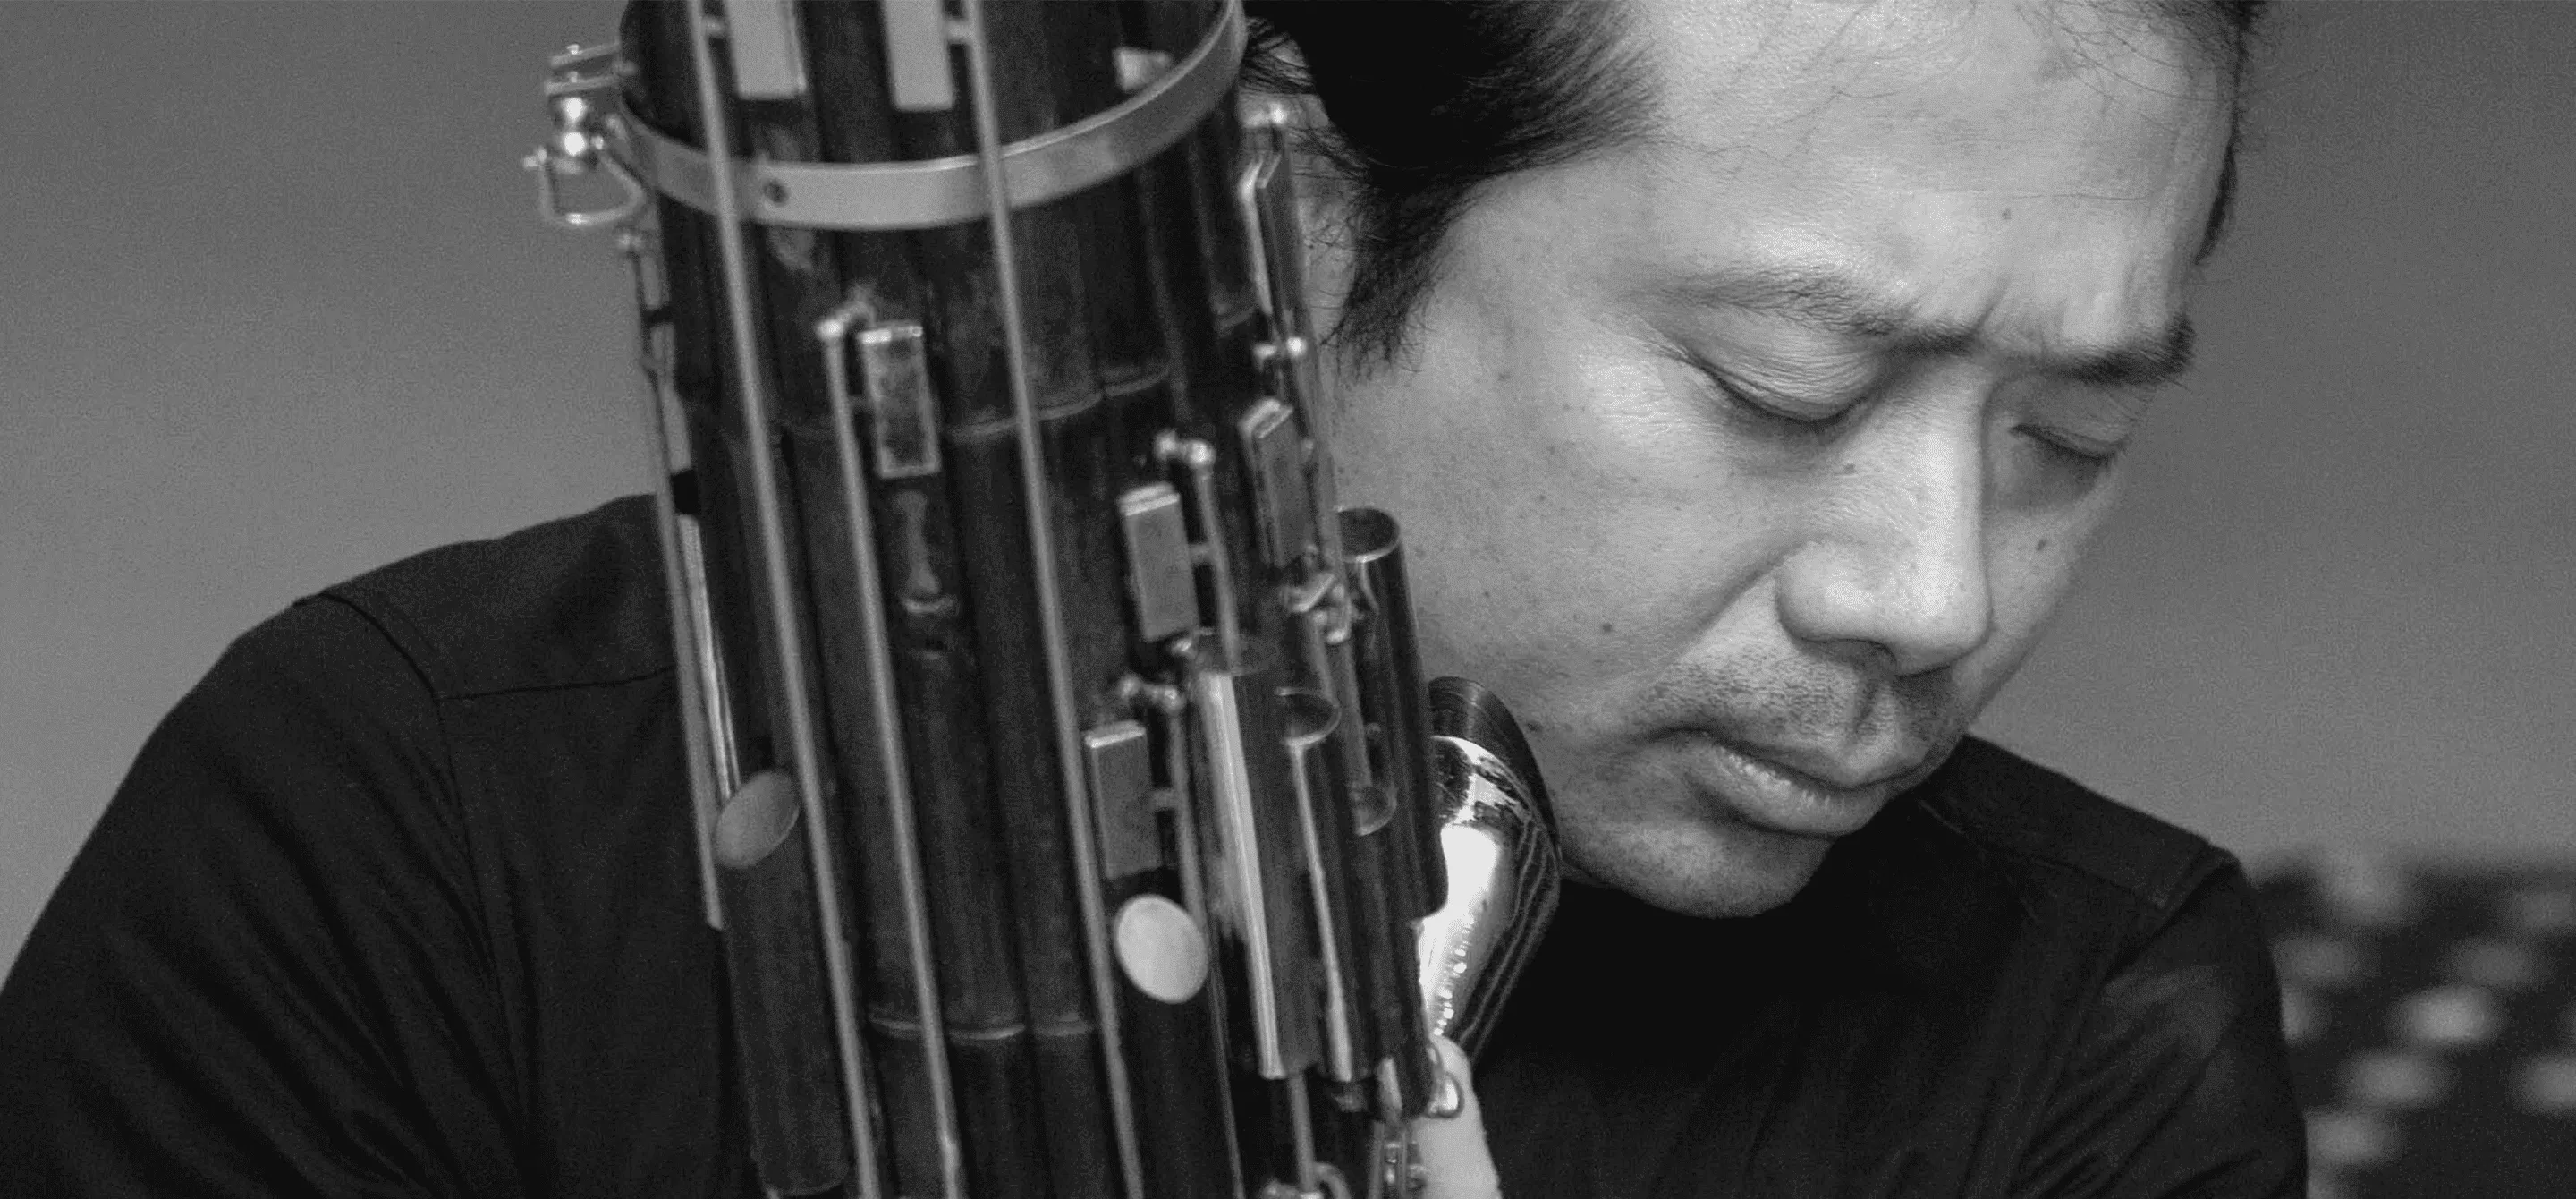 O músico Wu Wei segura o sheng, seu instrumento. A imagem é em preto e branco.